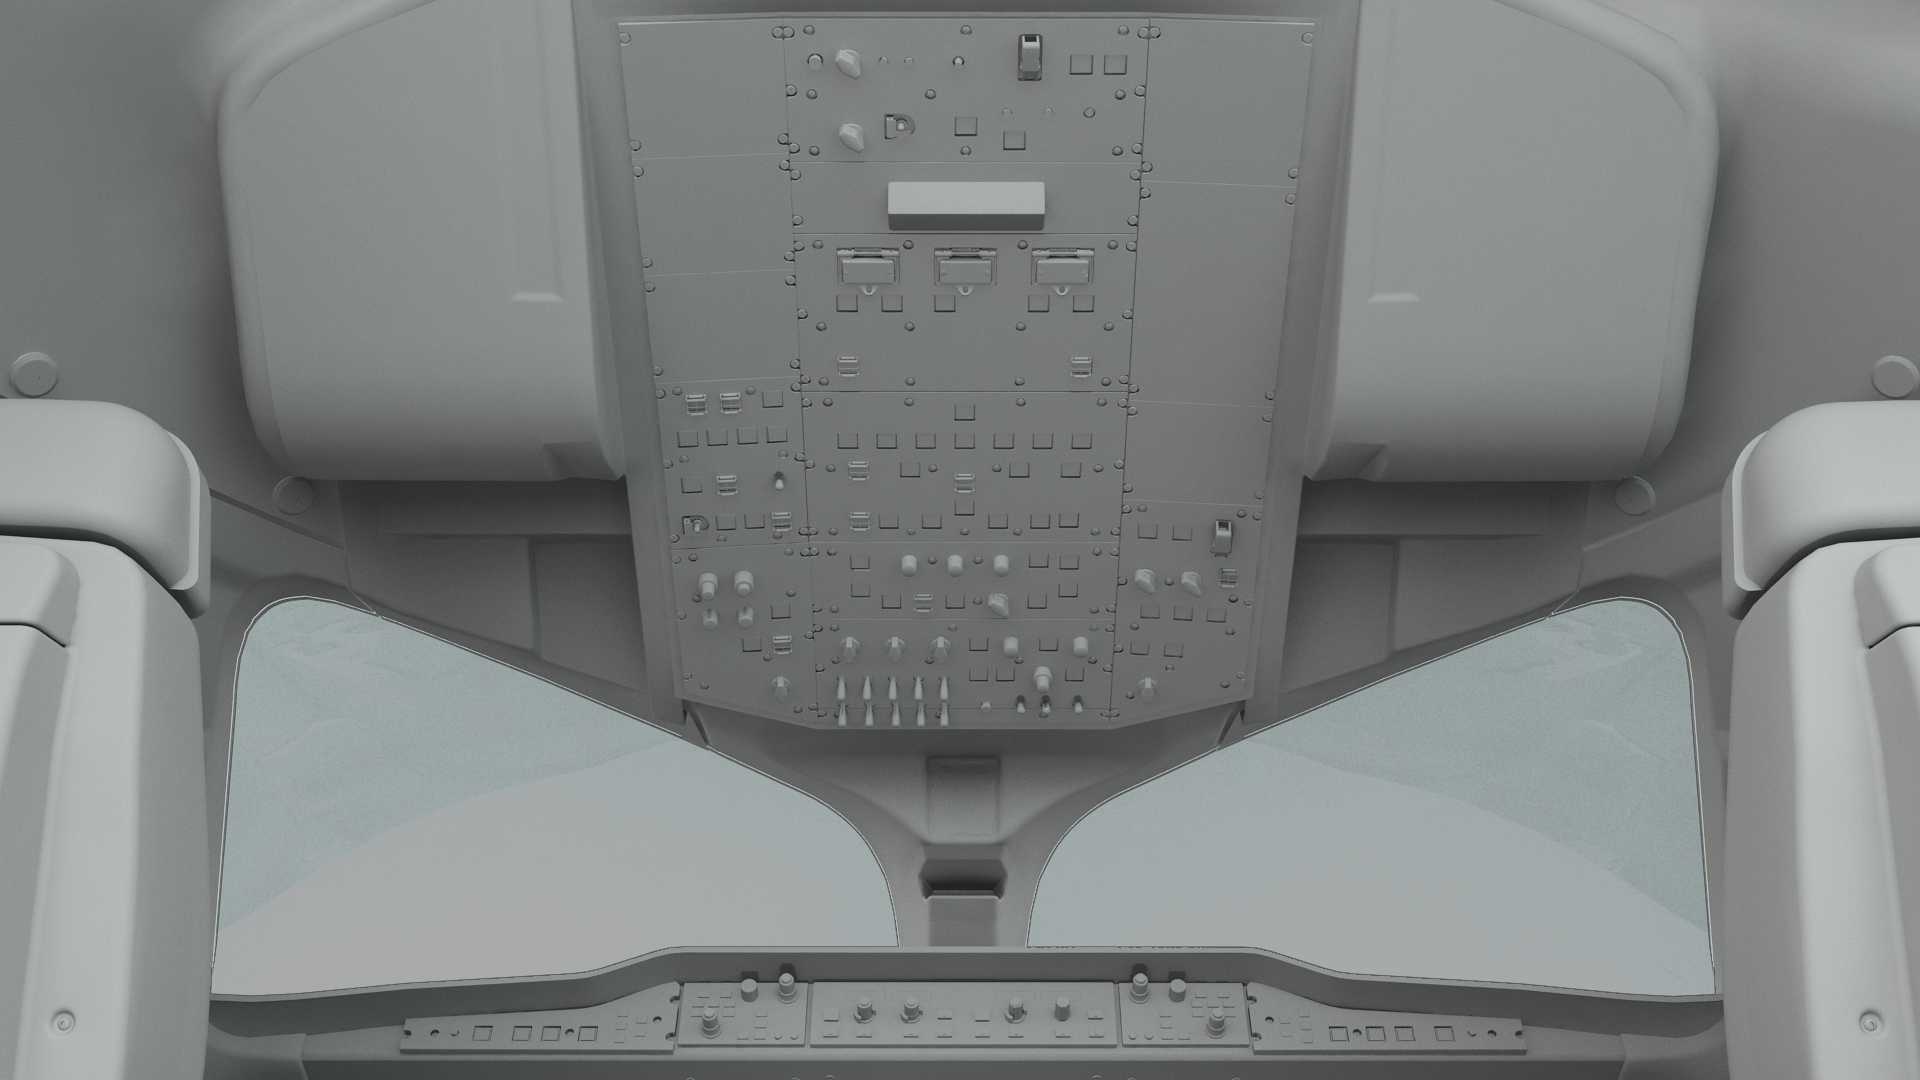 自研C919国产大飞机机模demo 微软模拟飞行演示2.0-6327 